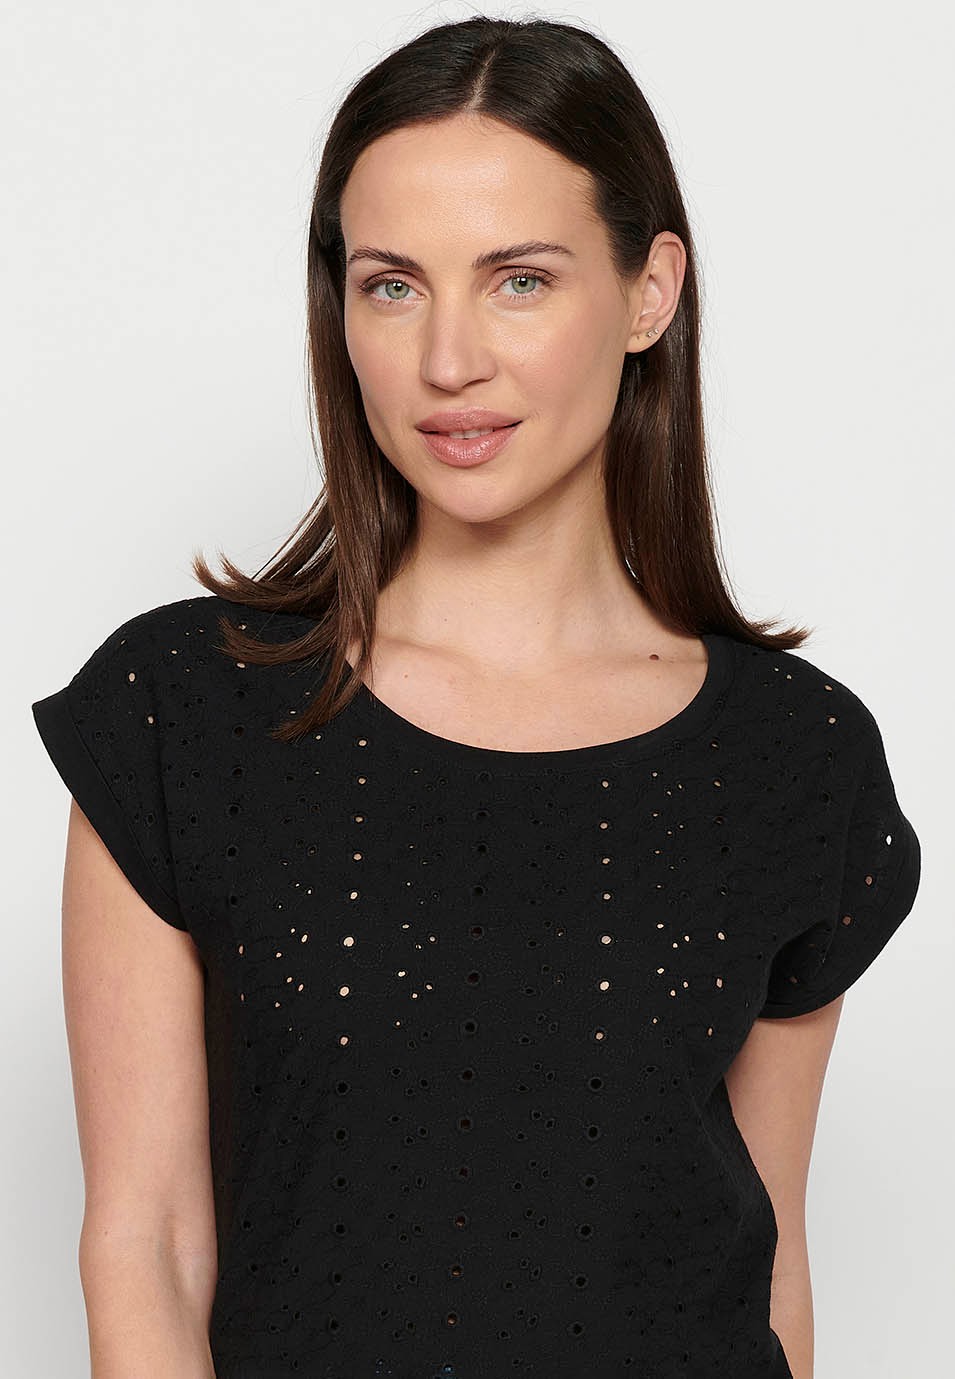 Women's Black Round Neckline Embroidered Short Sleeve T-Shirt